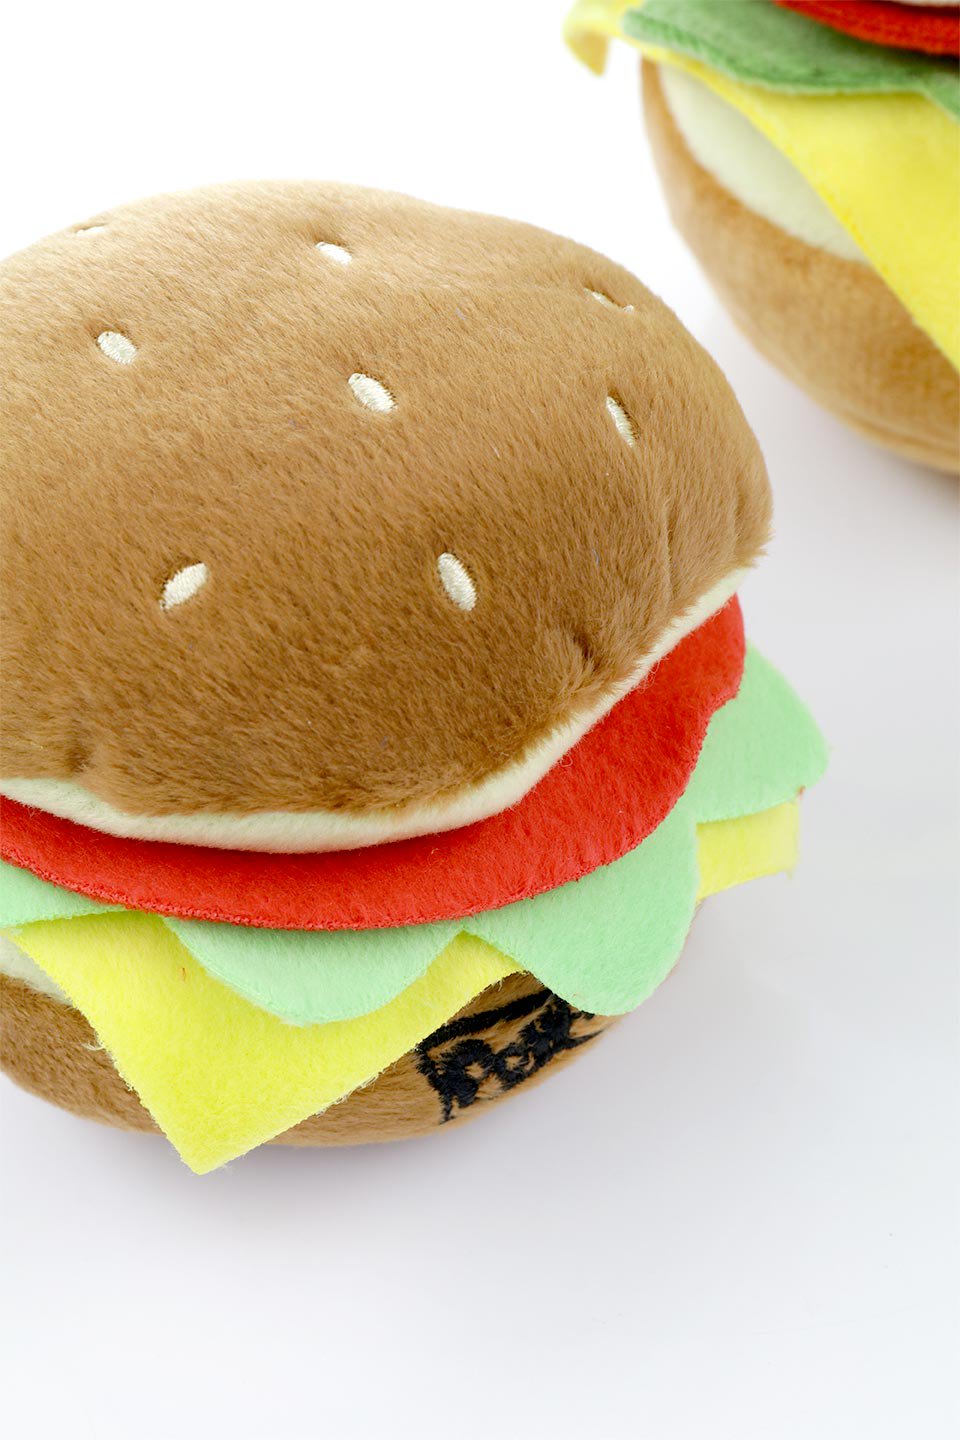 Hamburger Dog Toy (S) ハンバーガー・パロディーぬいぐるみ